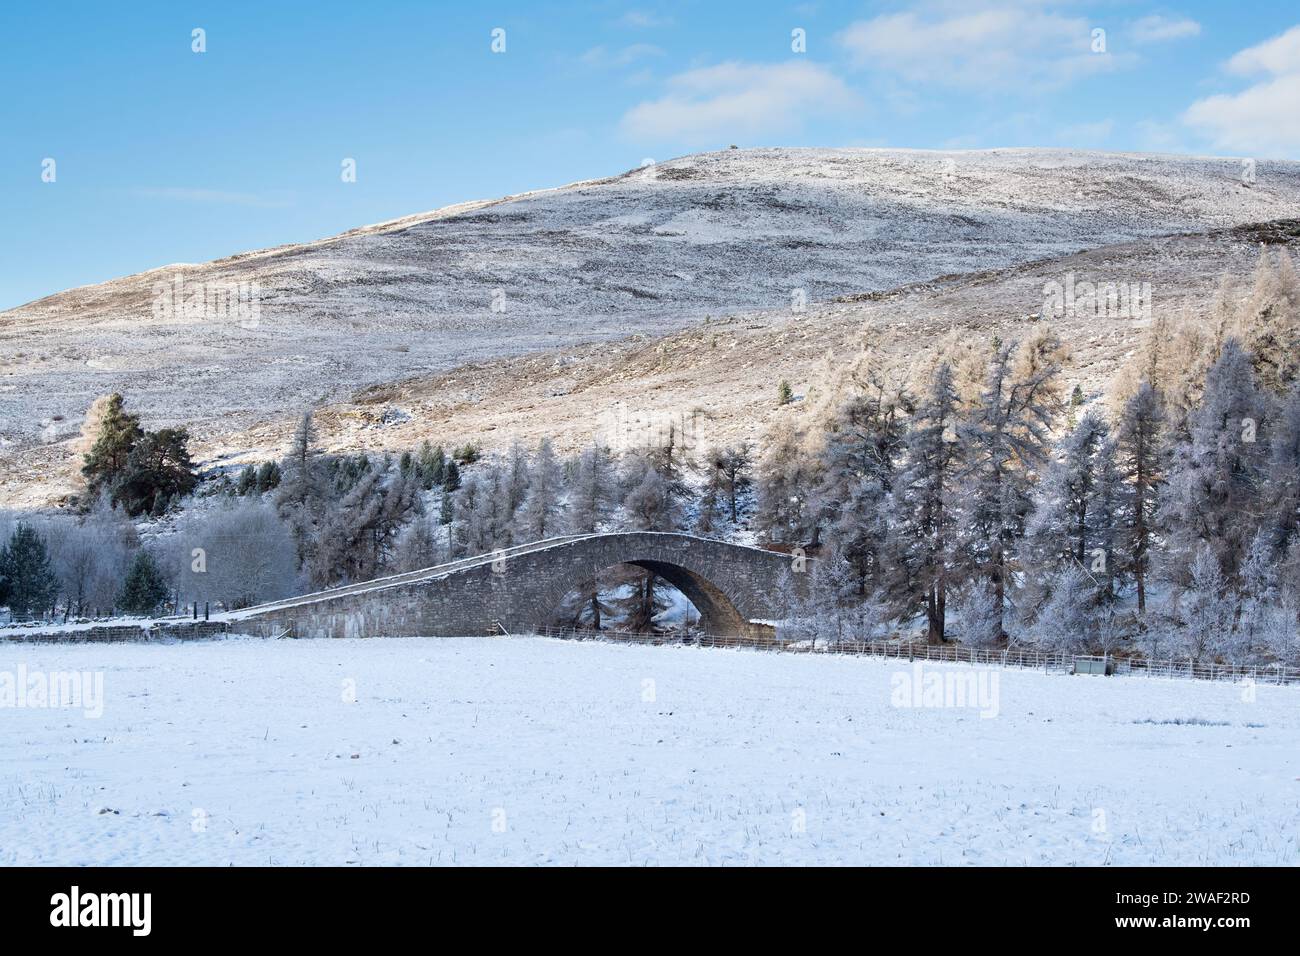 Pont de pierre sur la rivière Gairn dans la neige. Gairnshiel, Cairngorms, Highlands, Écosse Banque D'Images